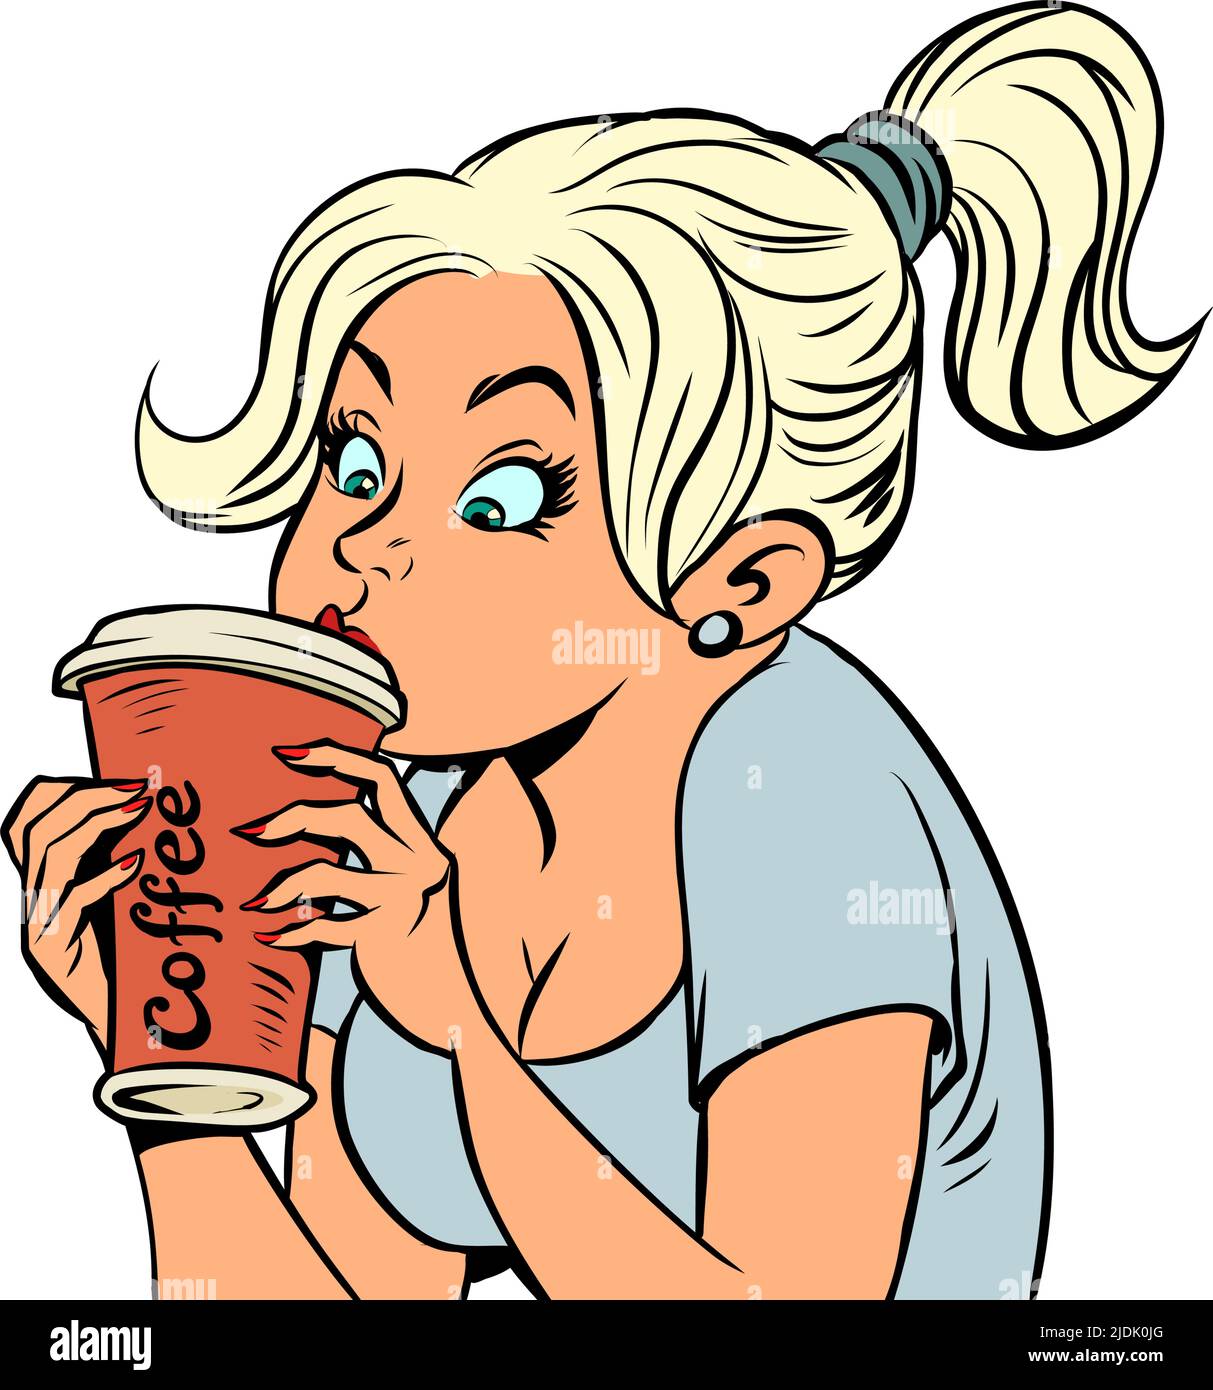 Hermosa chica bebiendo café caliente, taza de papel, cafetería de la mañana. Cómic kitsch estilo vintage dibujo de la mano ilustración Ilustración del Vector